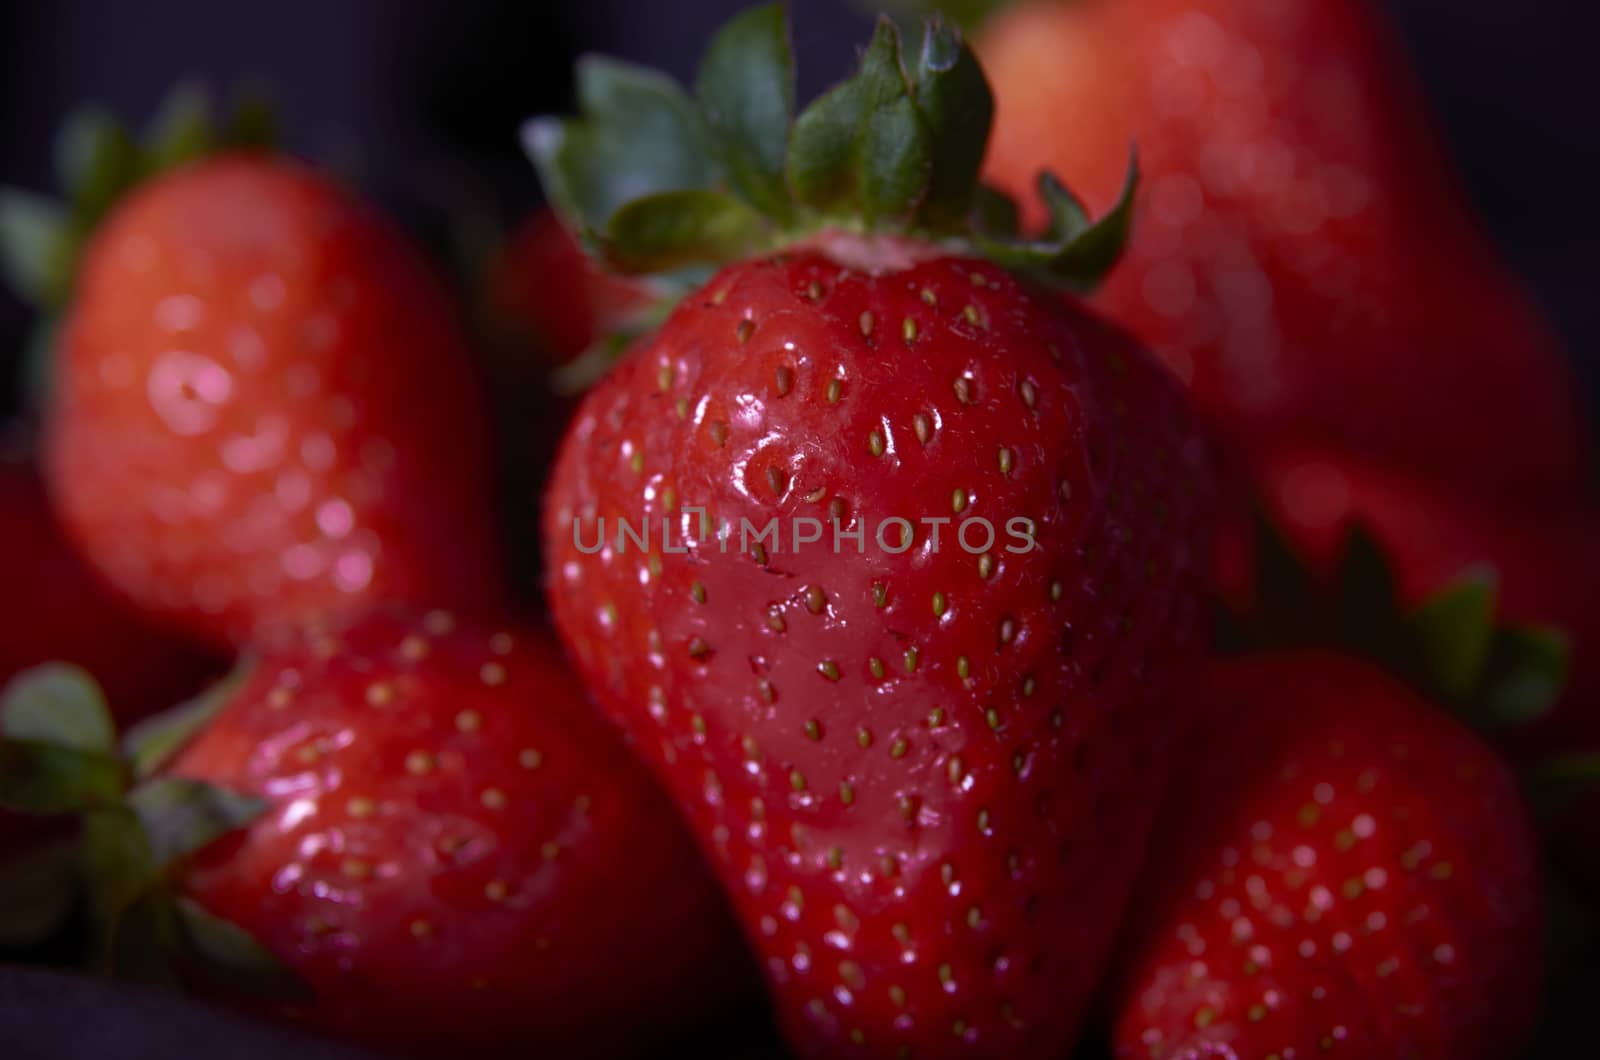 A bunch of strawberries by bpardofotografia